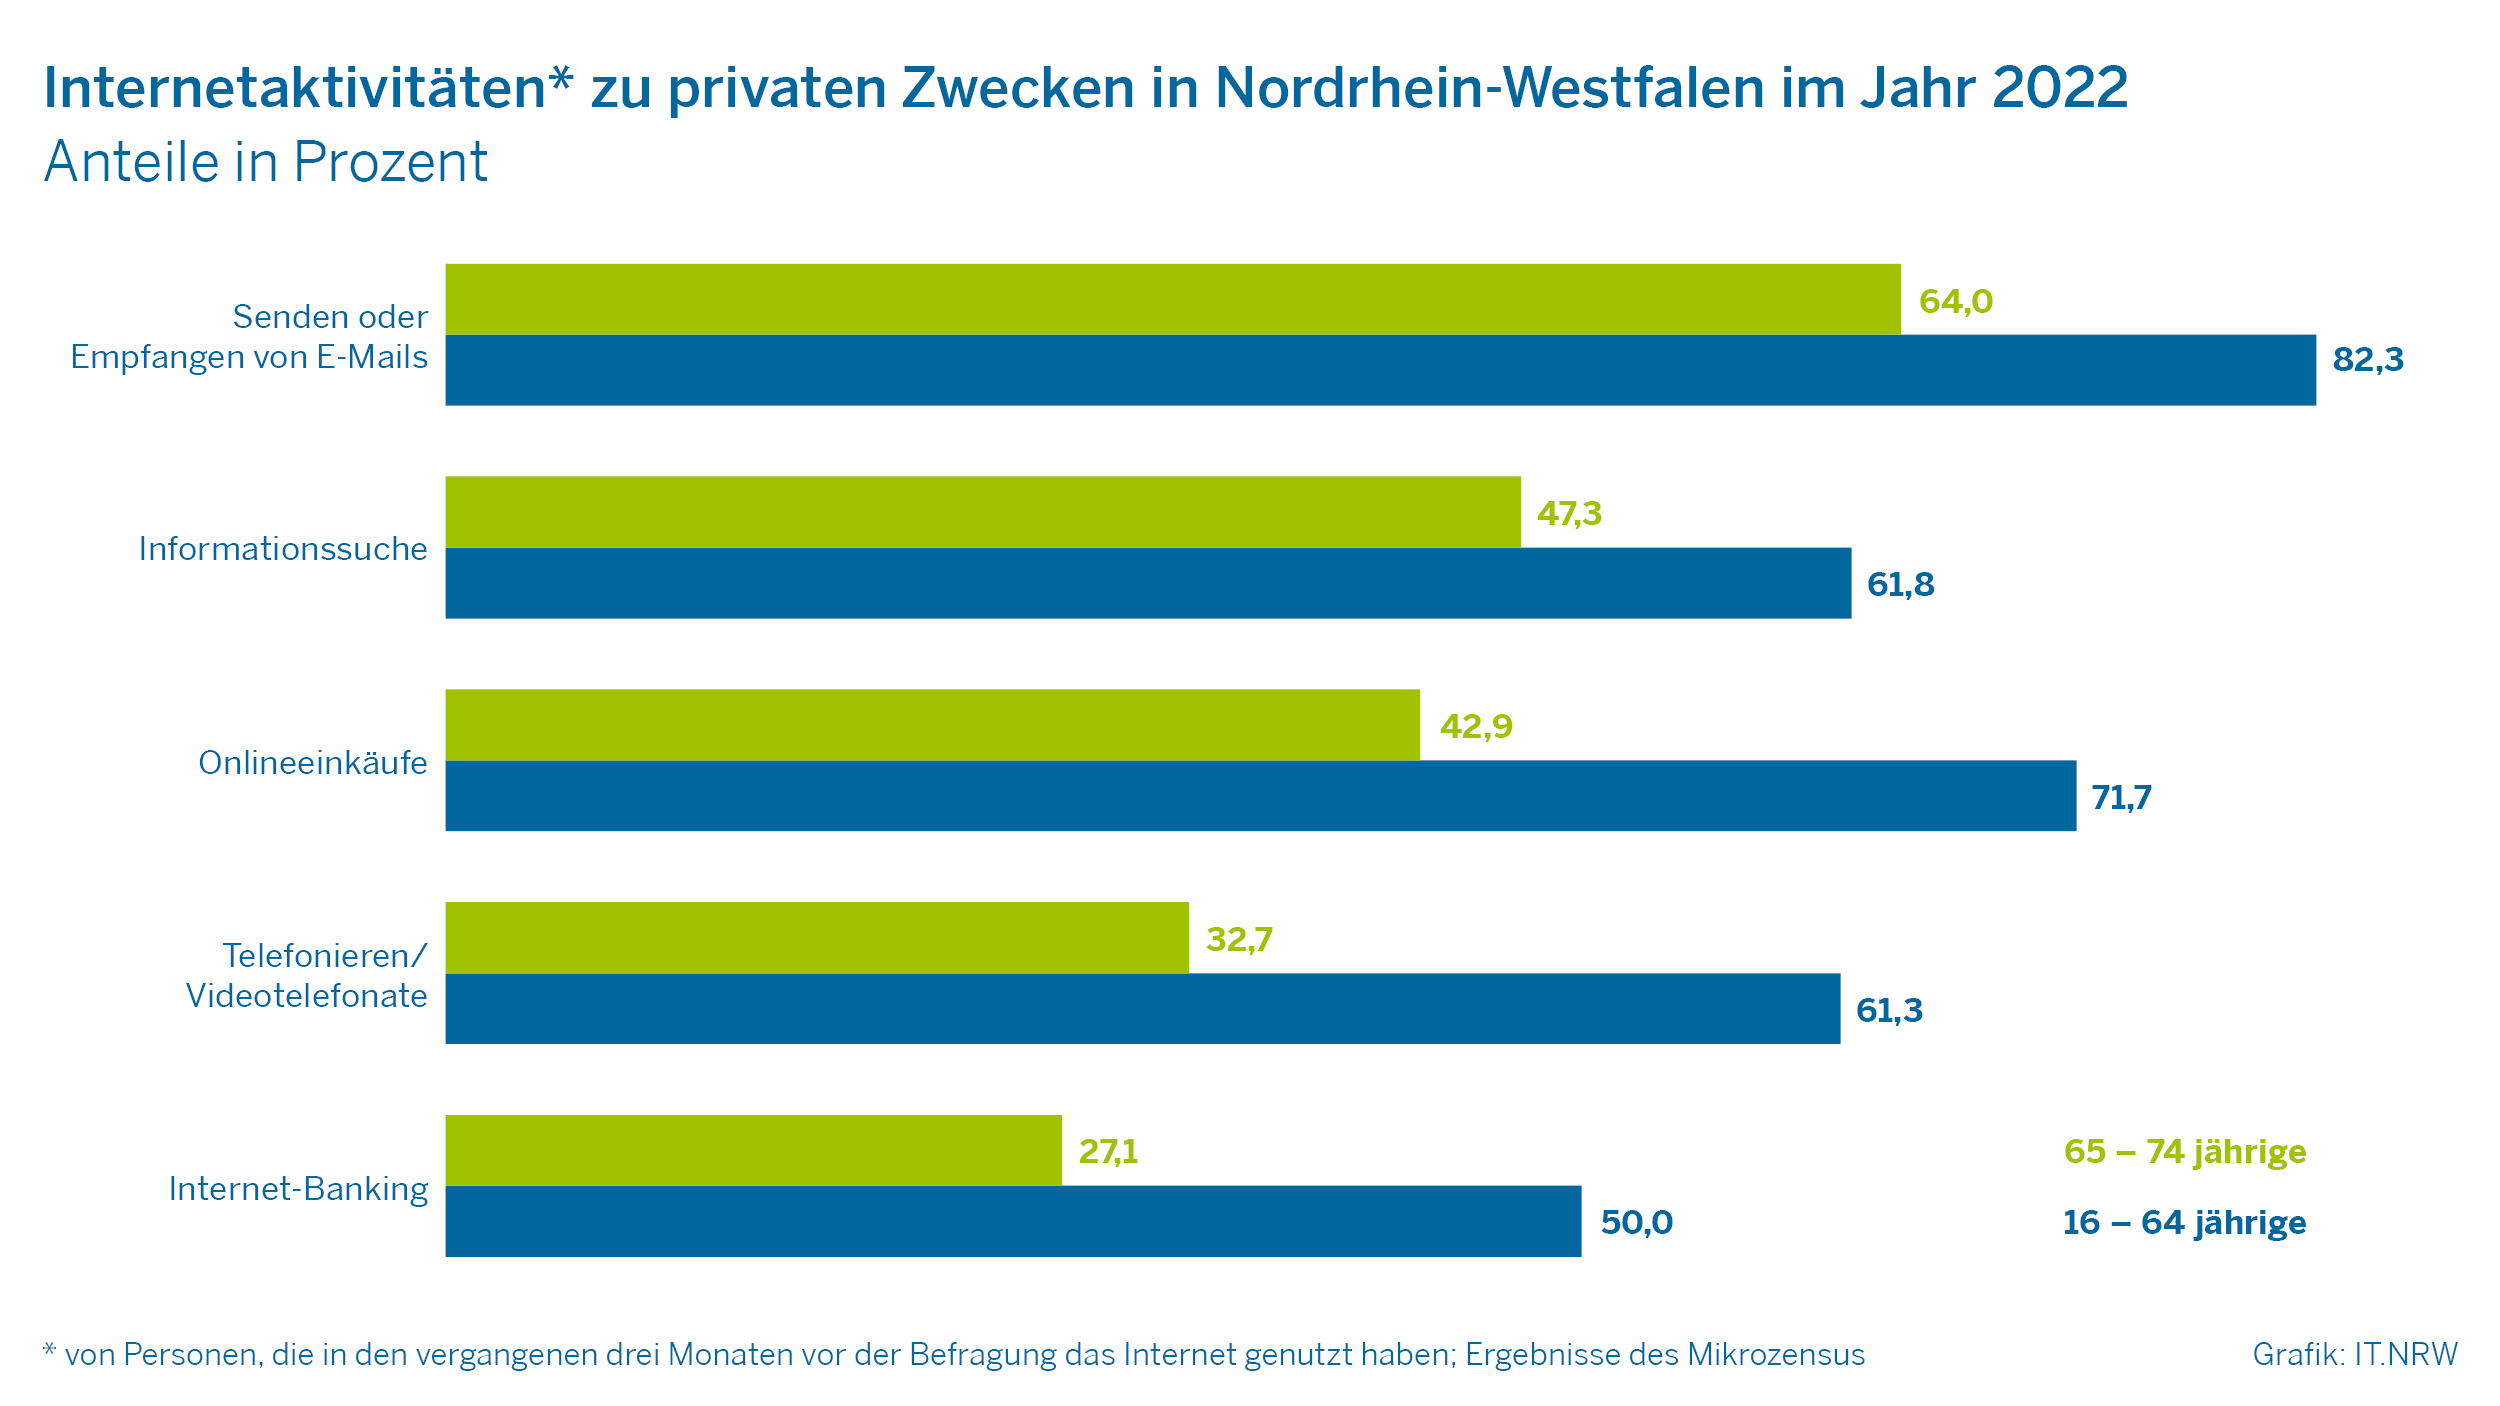 Internetaktivitäten zu privaten Zwecken in Nordrhein-Westfalen im Jahr 2022